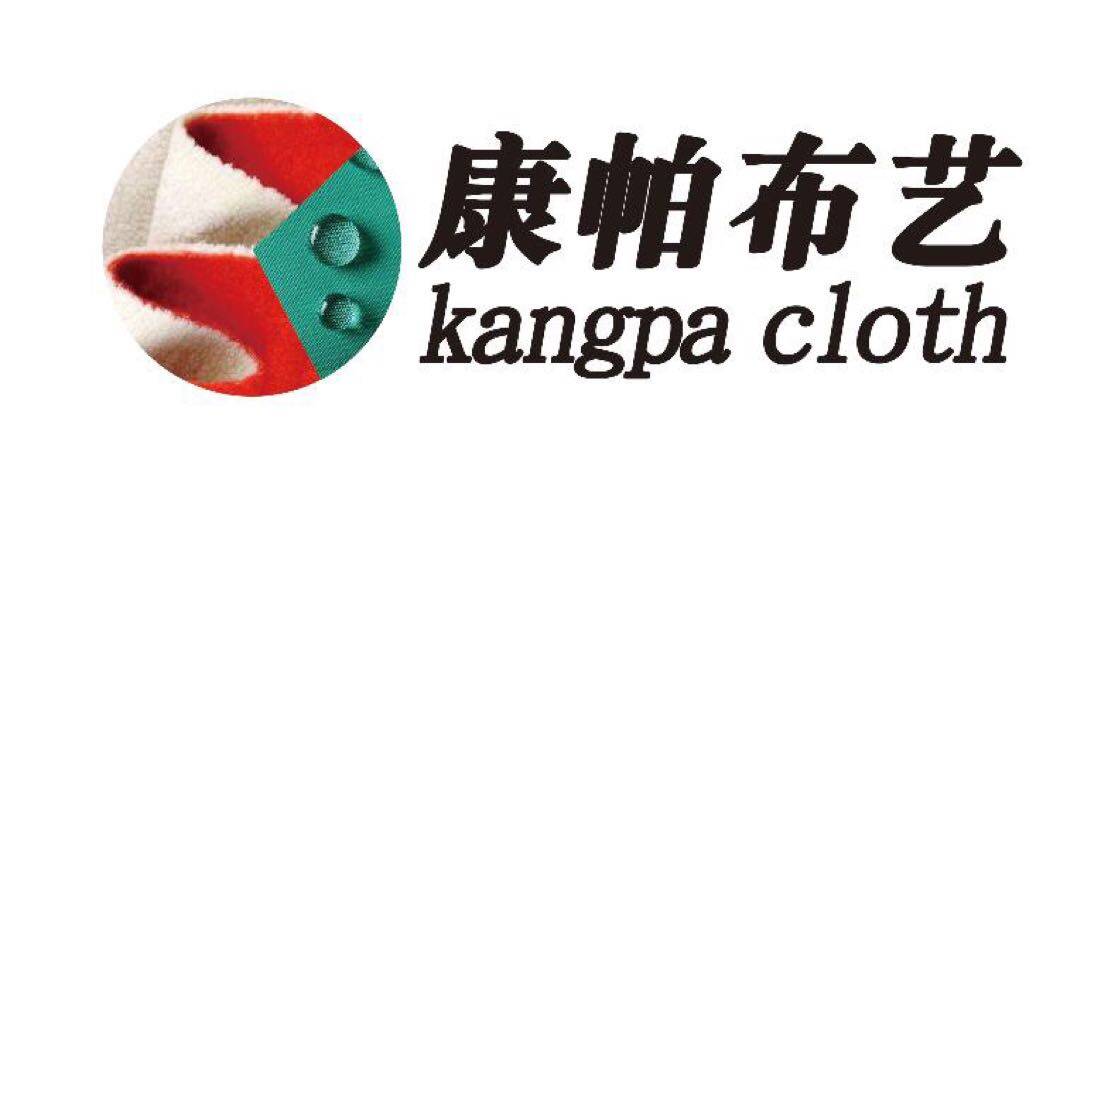 东莞市康帕新材料科技有限公司logo